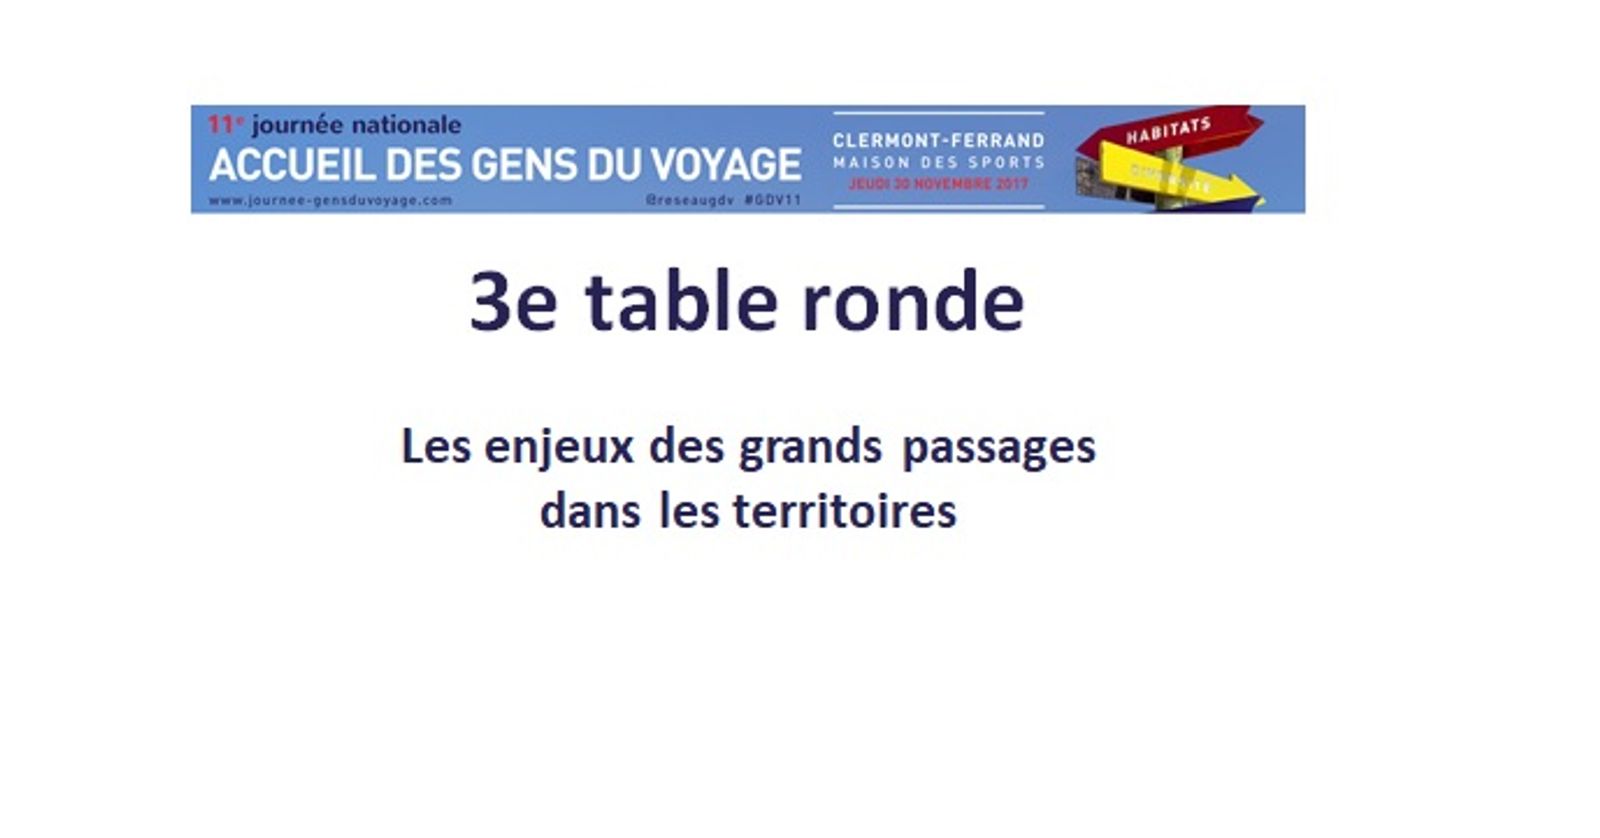 11eme Journée Nationale des Gens du voyage | Troisième table ronde